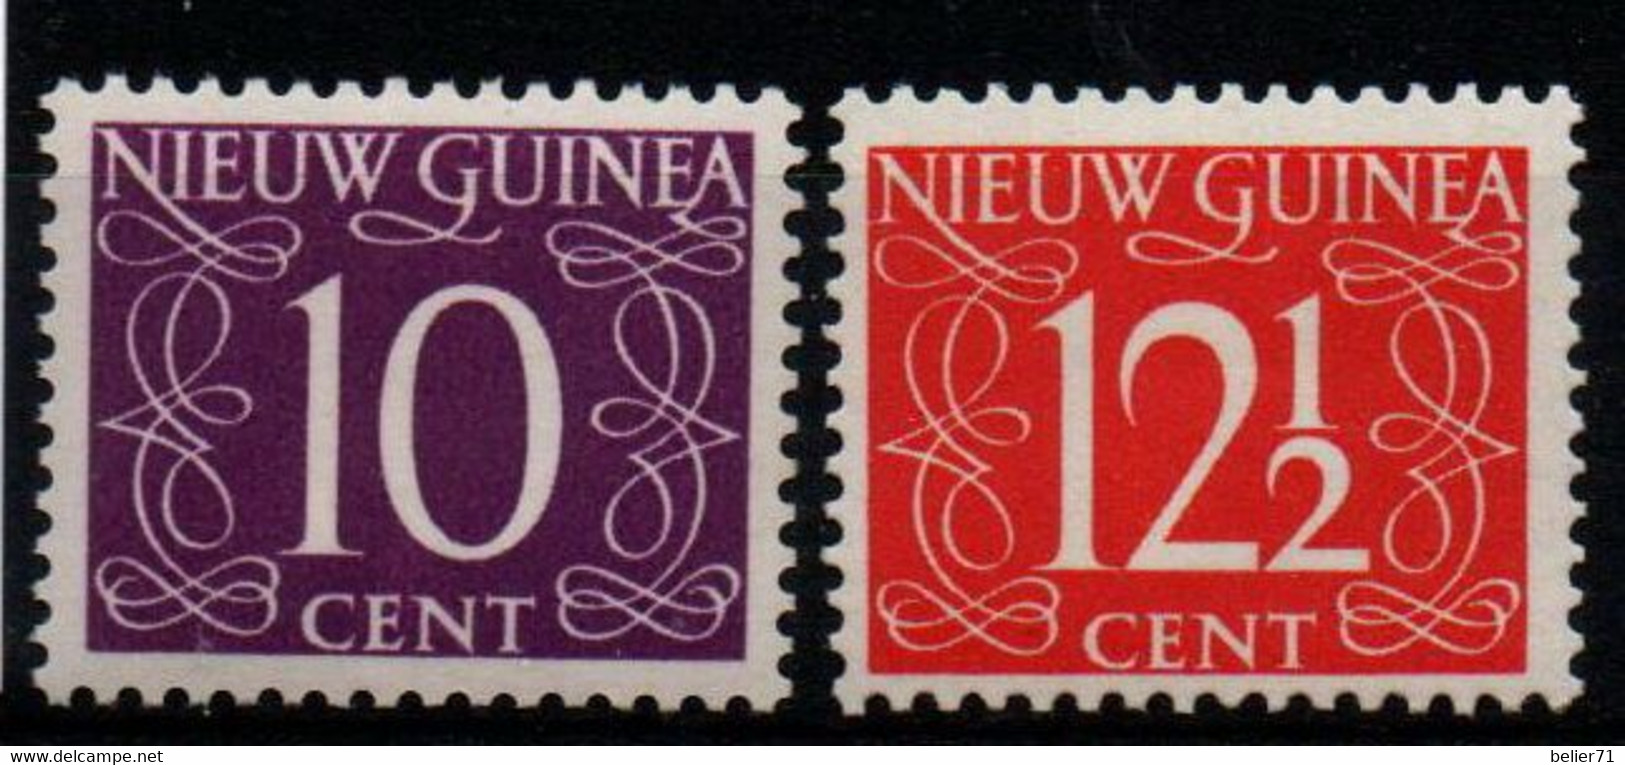 Pays Bas : Nouvelle Guinée N° 8 Et 9 X Neufs Avec Traces De Charnière Année 1950 - Netherlands New Guinea